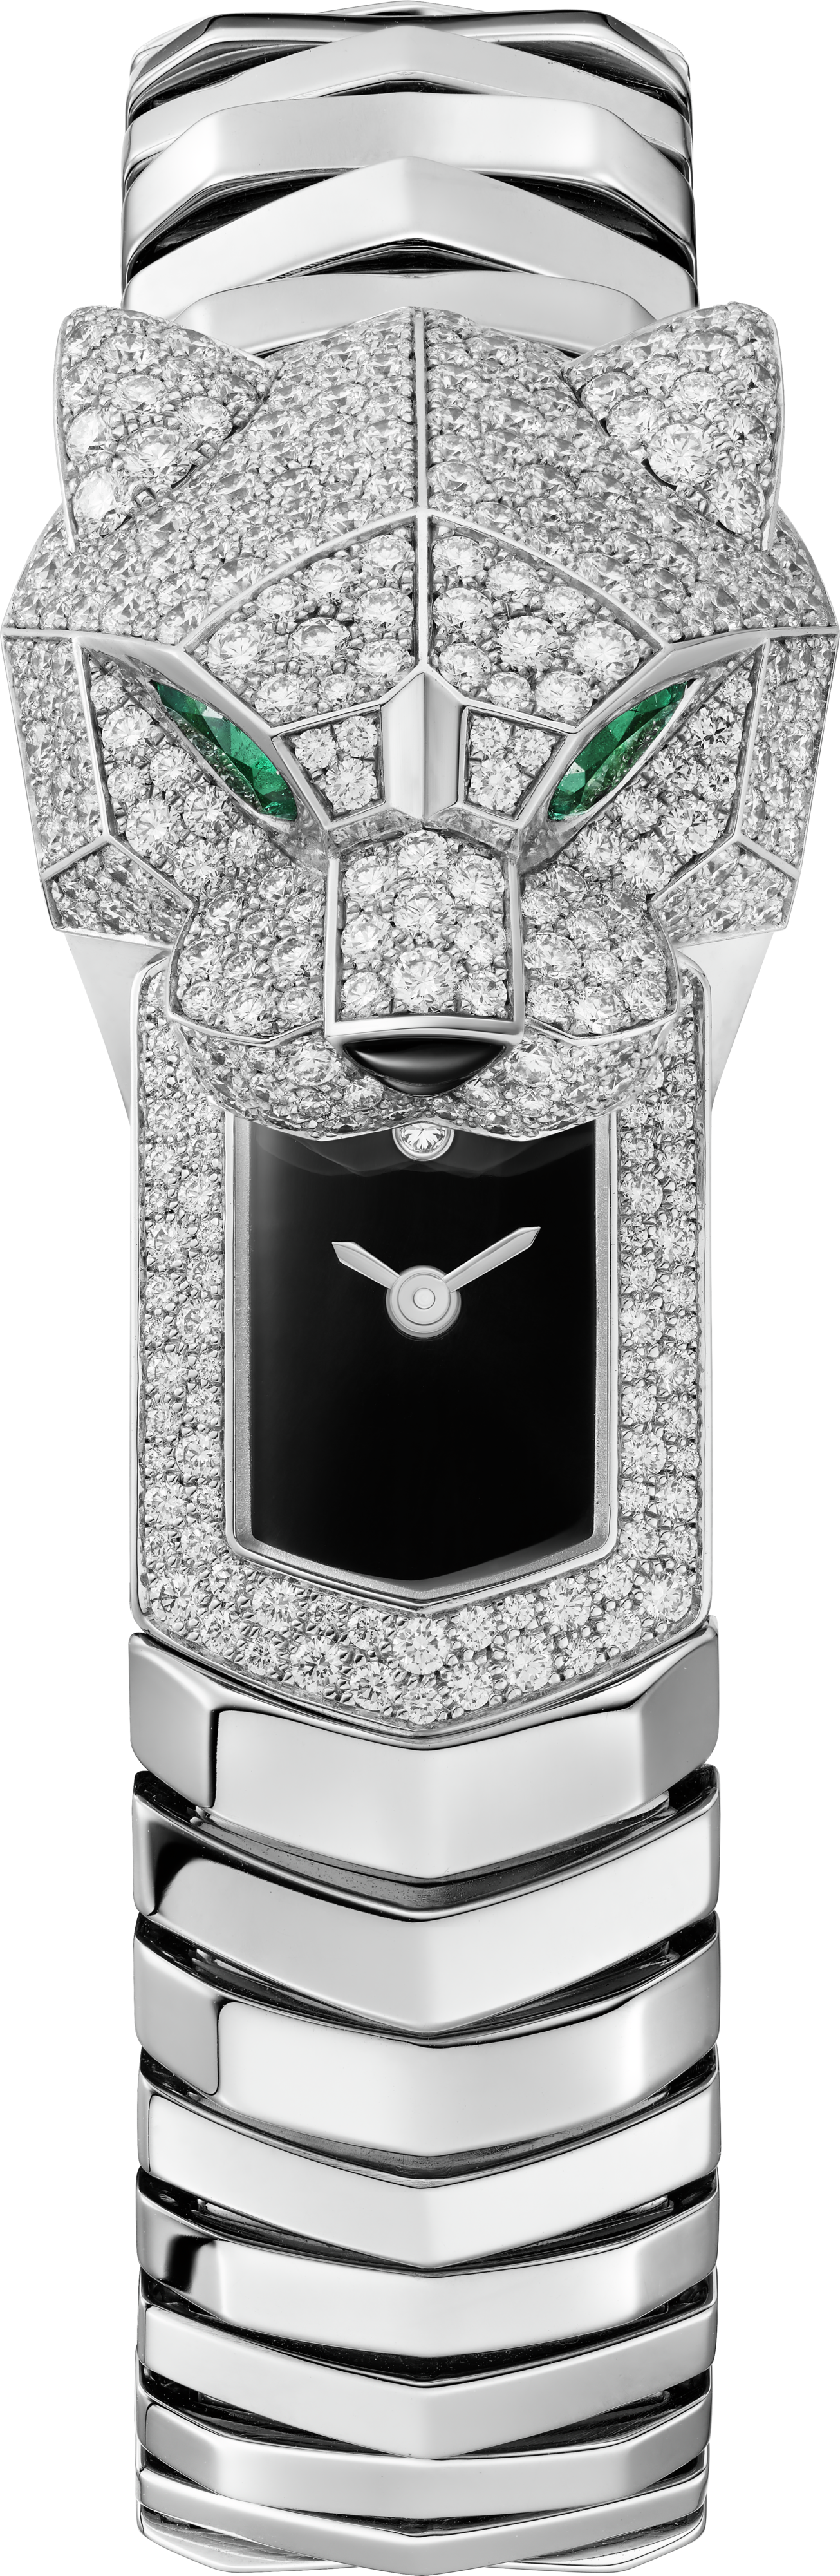 Panthère de Cartier watch38.2 mm, quartz movement, rhodium-finish white gold, diamonds, metal bracelet